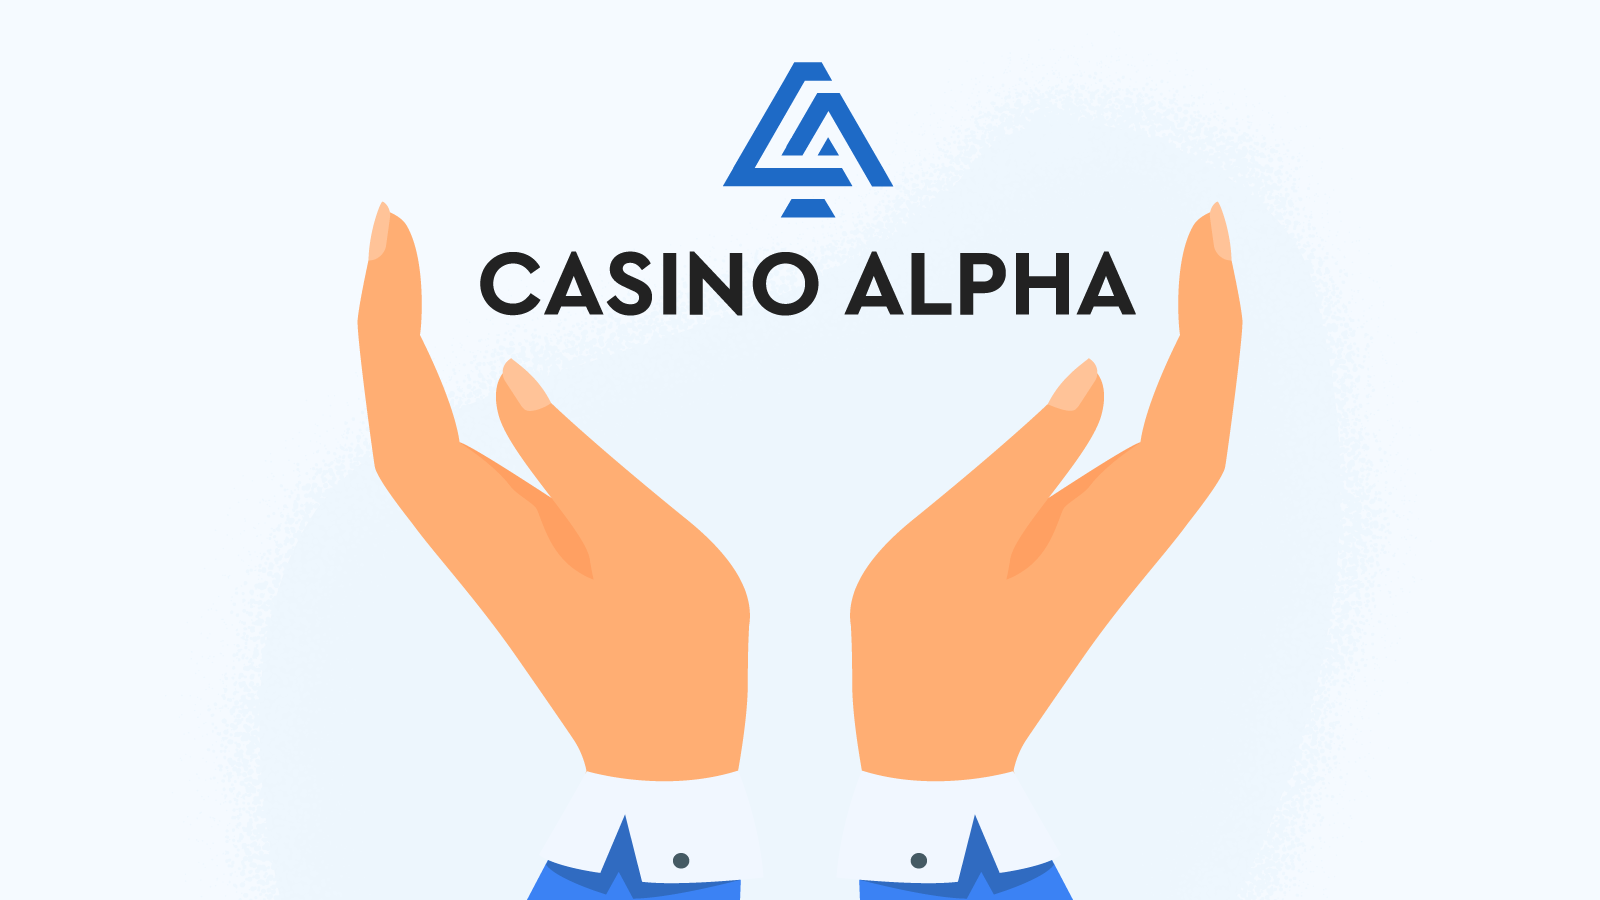 CasinoAlpha is here to help